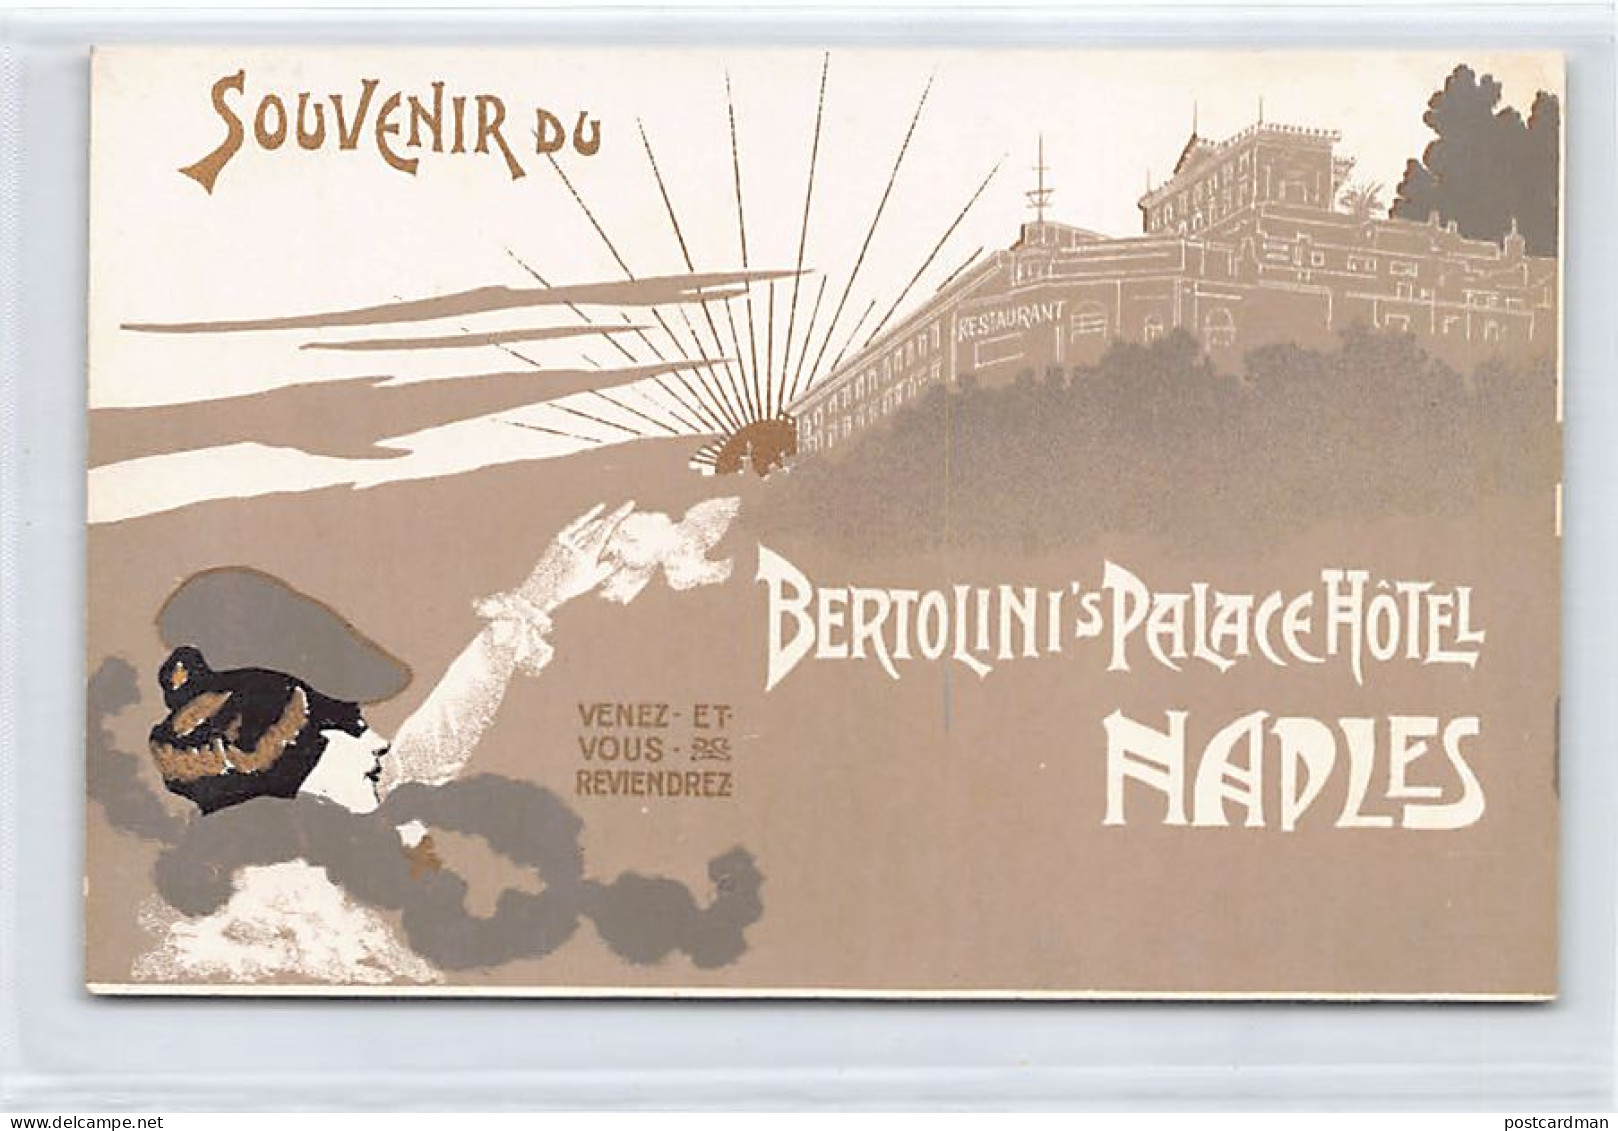 NAPOLI - Bertolini's Palace Hotel - ART NOUVEAU Jugendstil - Napoli (Napels)